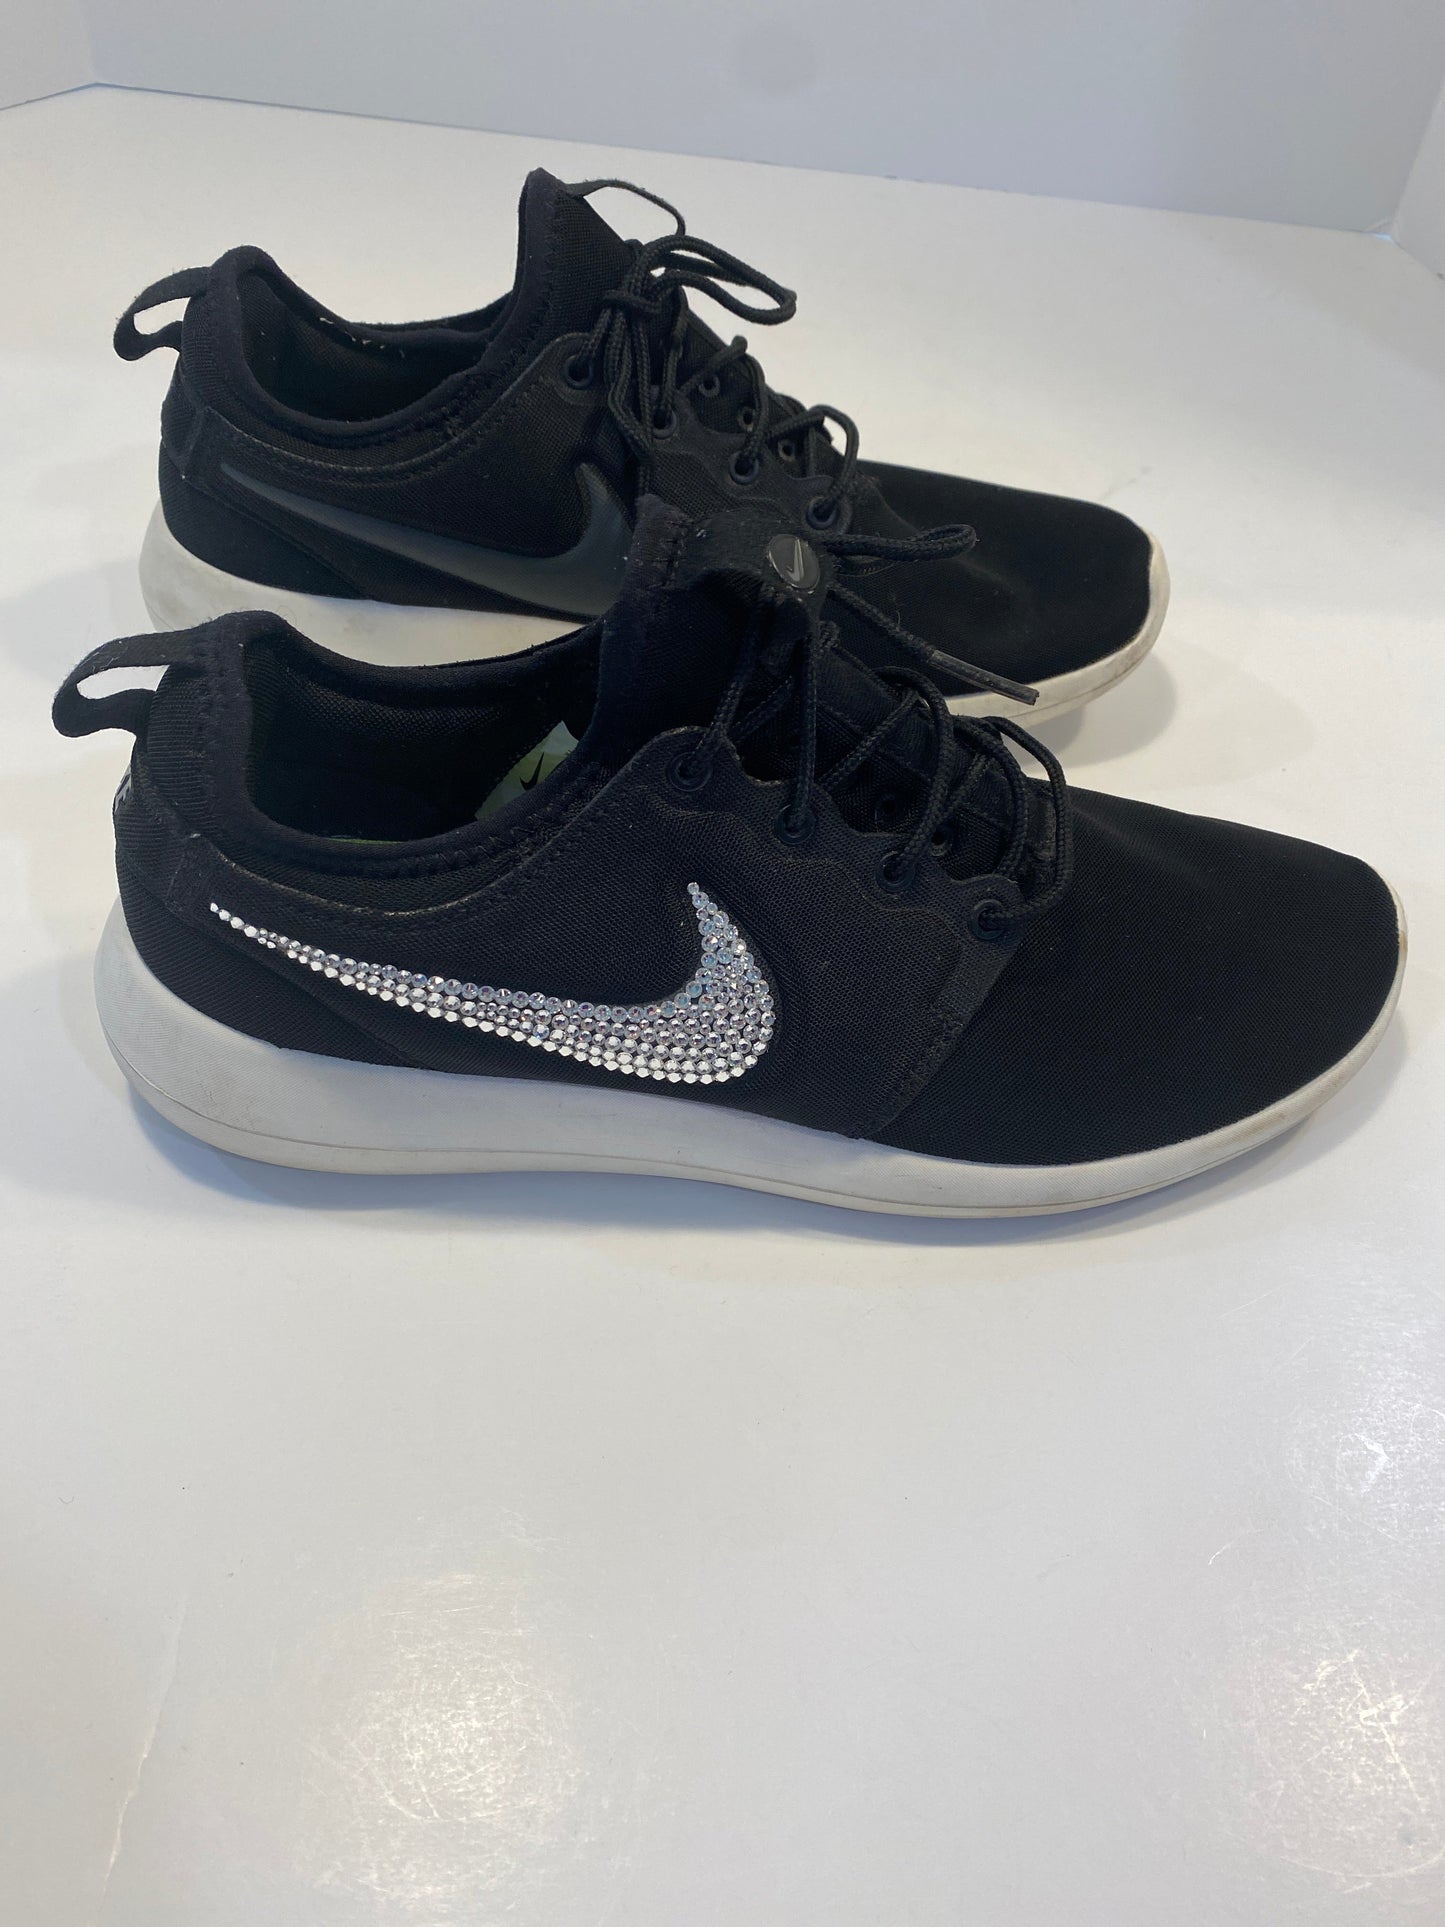 Black Shoes Athletic Nike, Size 9.5